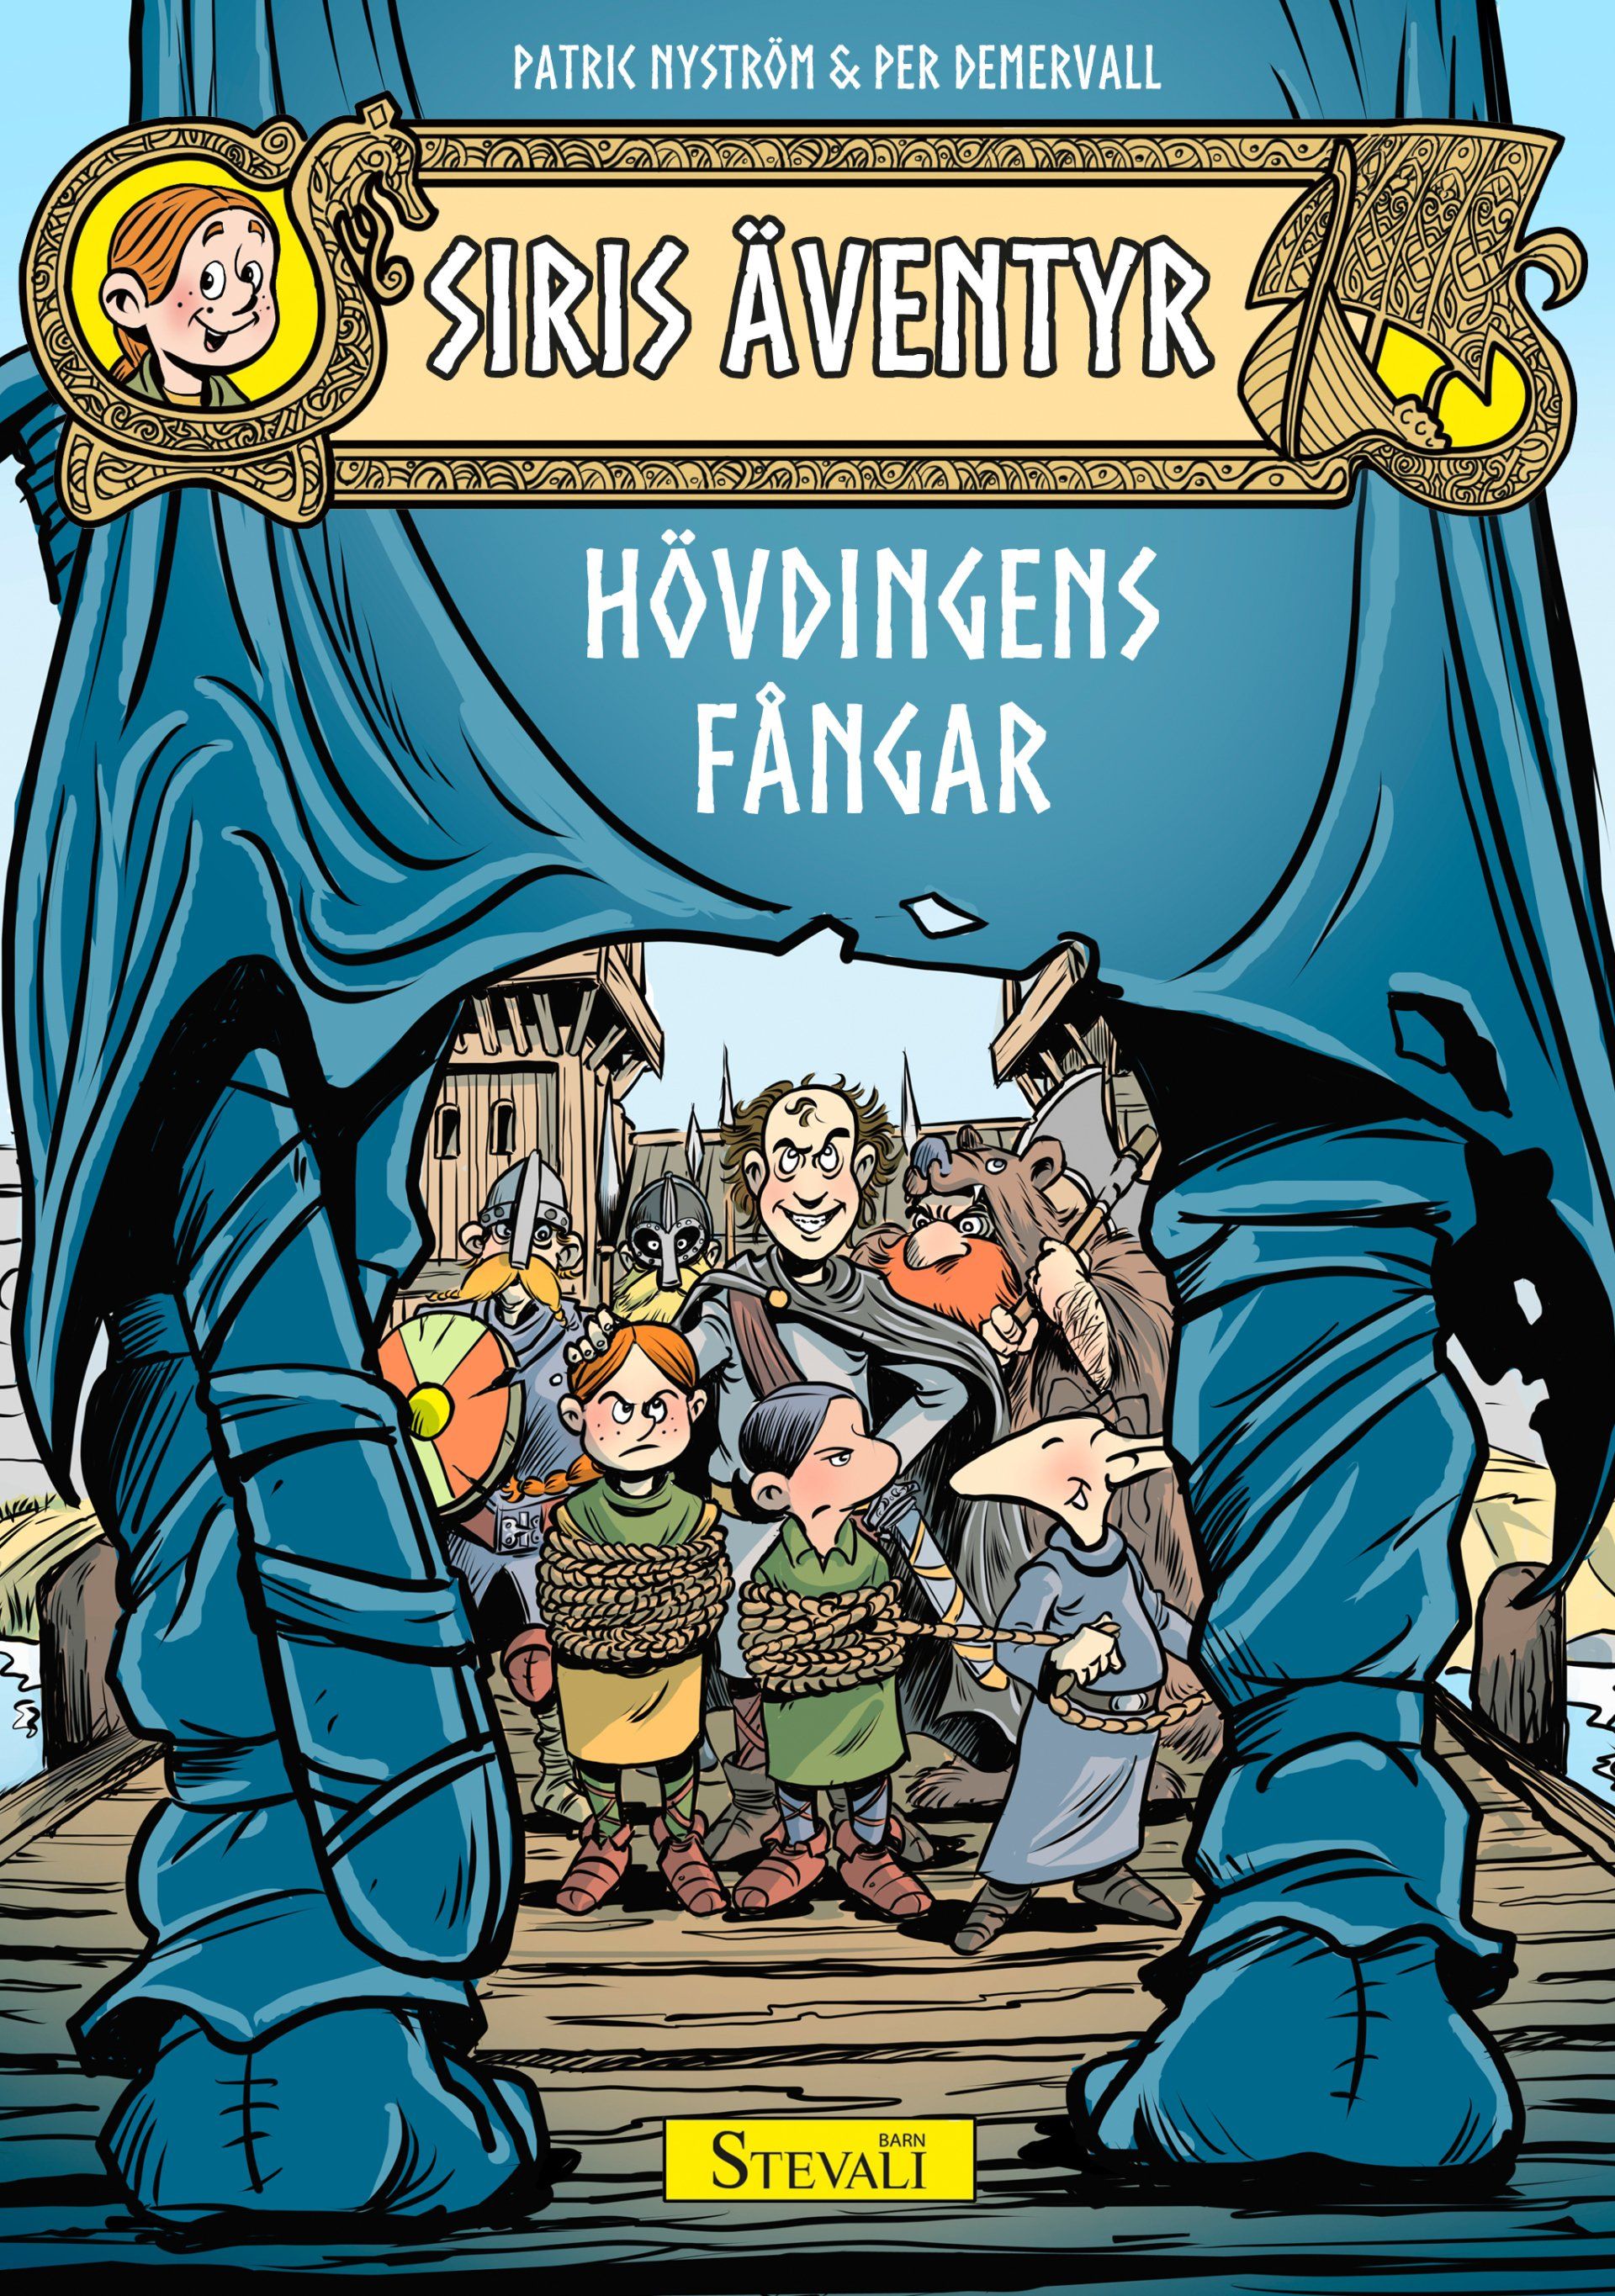 Barnboken Siris äventyr: Hövdingens fångar är skriven av Patric Nyström och  illustrerad av Per Demervall på Stevali Bokförlag.